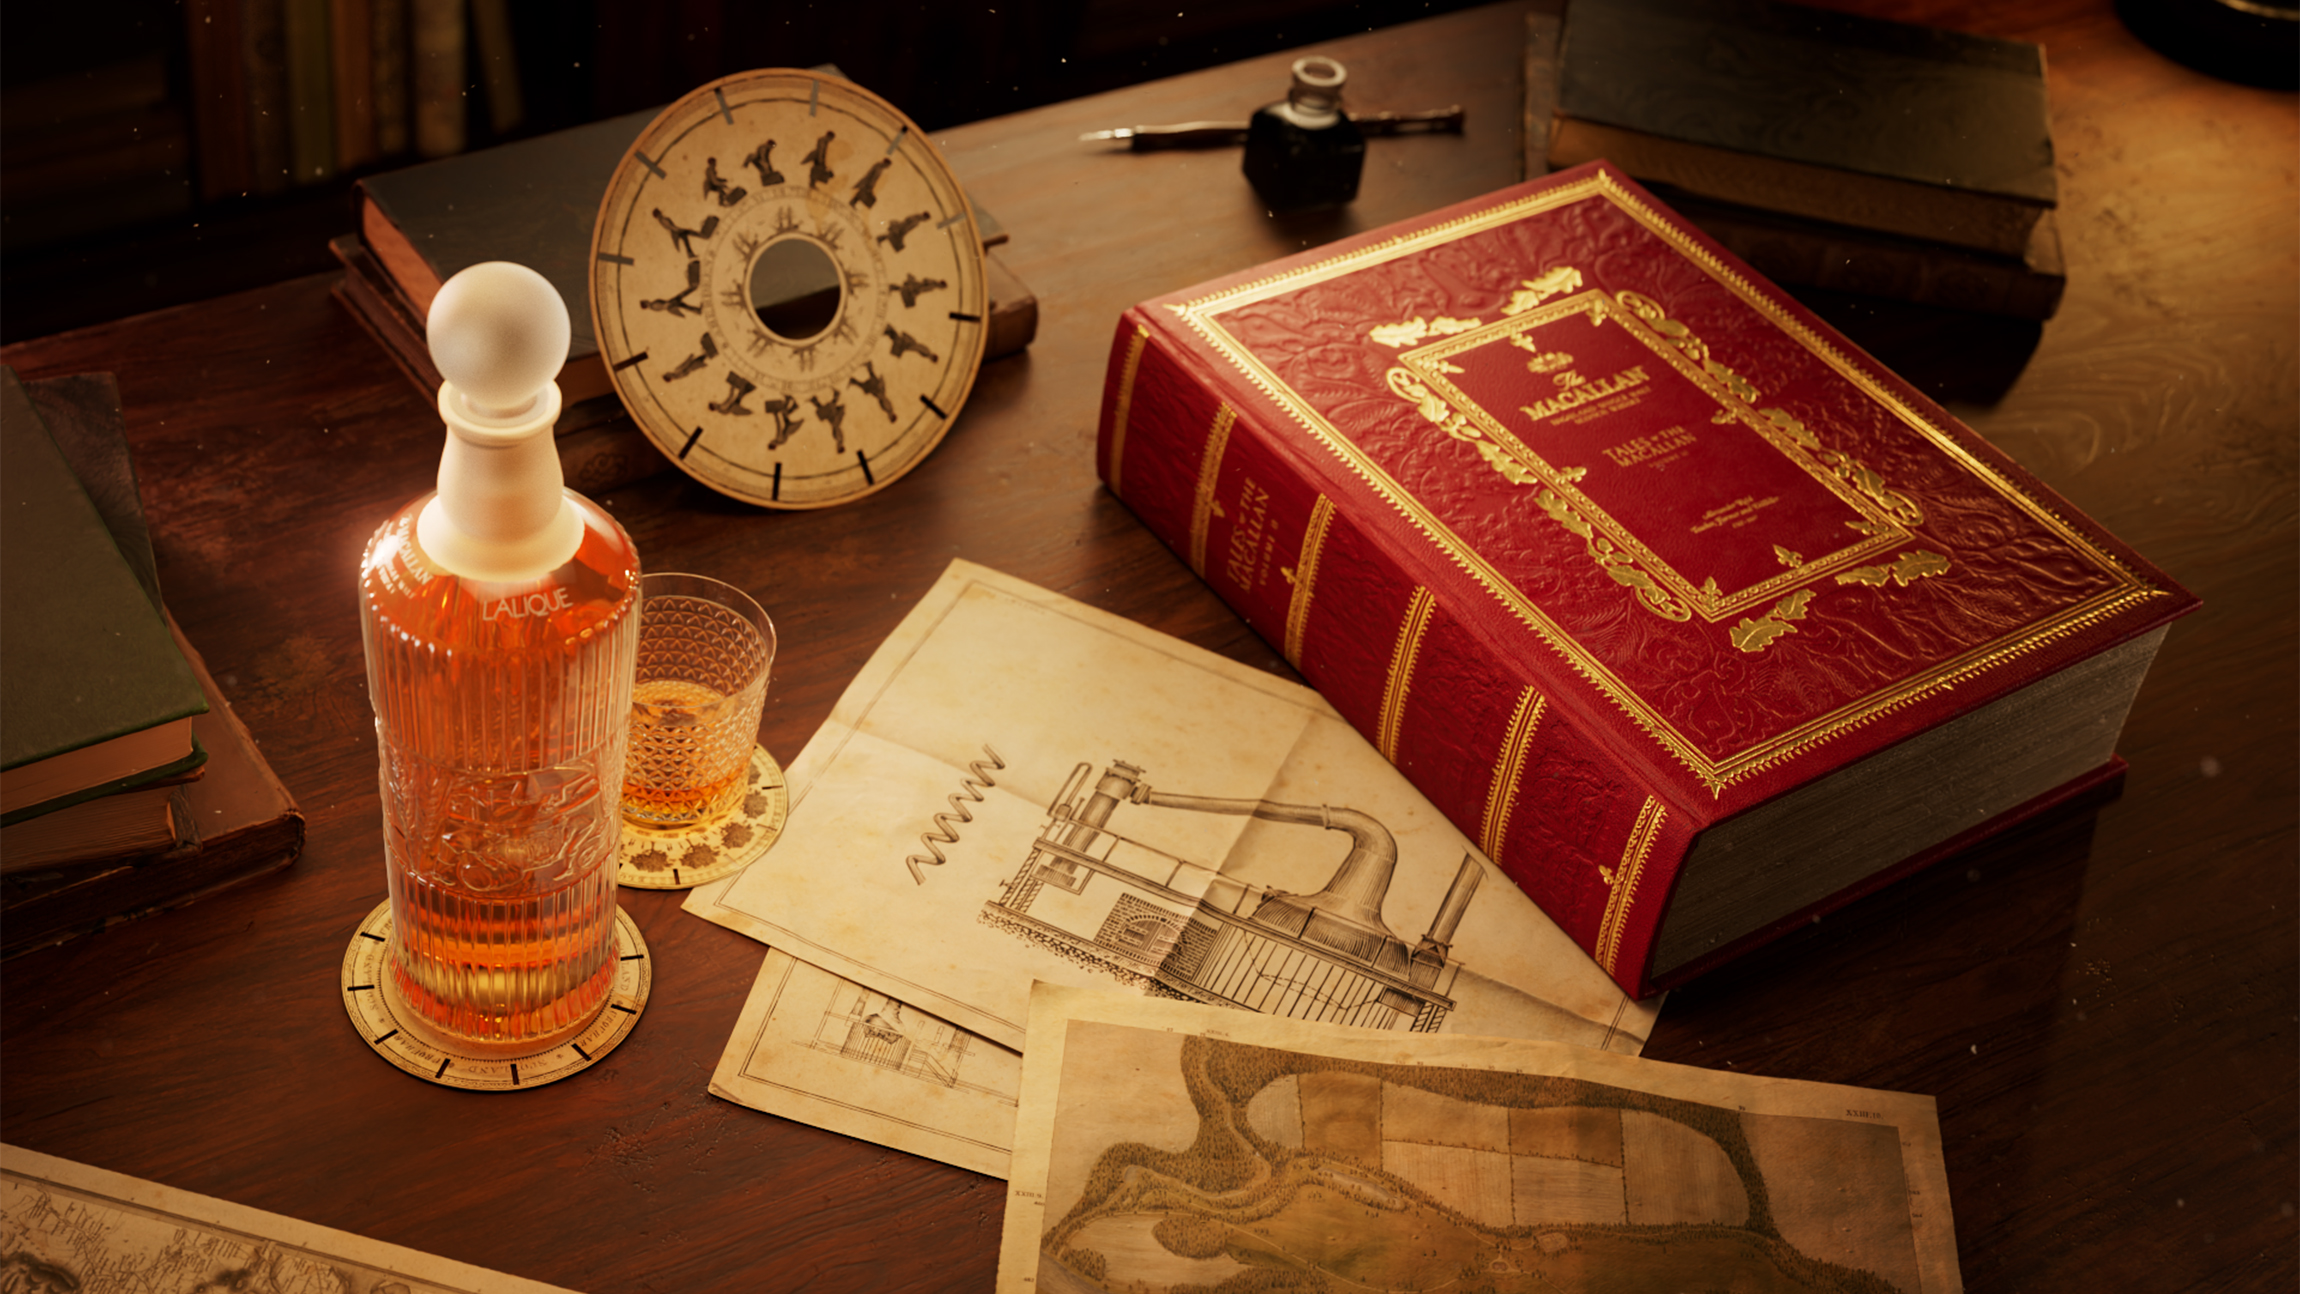 麦卡伦传奇系列第二卷瞩目发布 致敬传奇开创先驱 礼赞匠心制酒传承